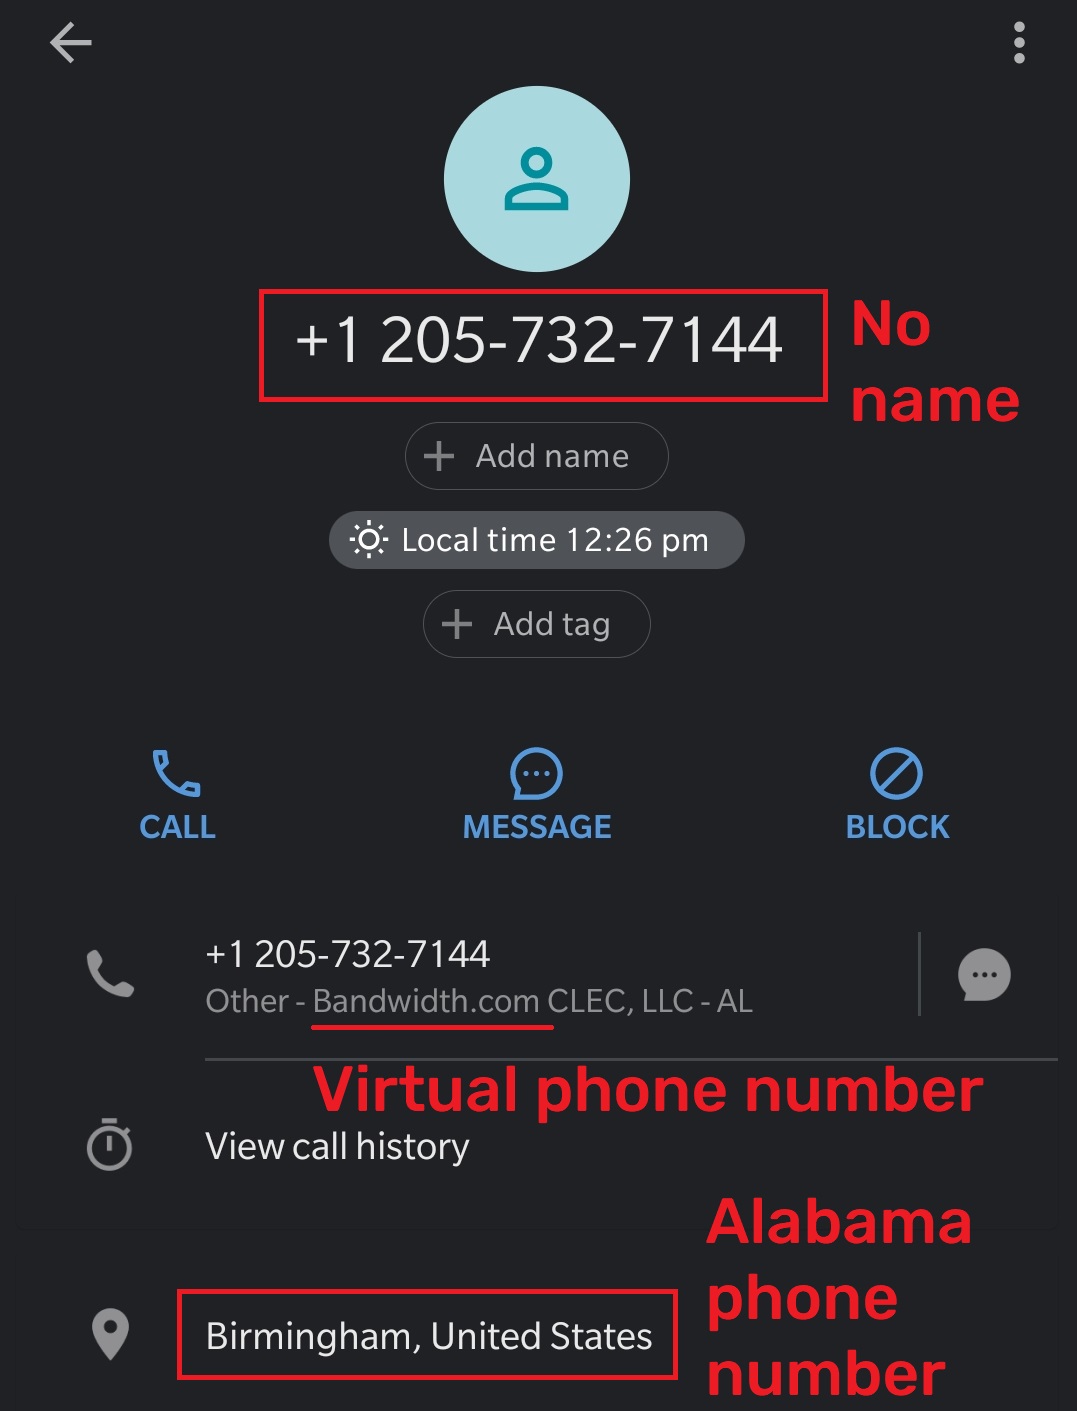 standardbitpool fake phone number